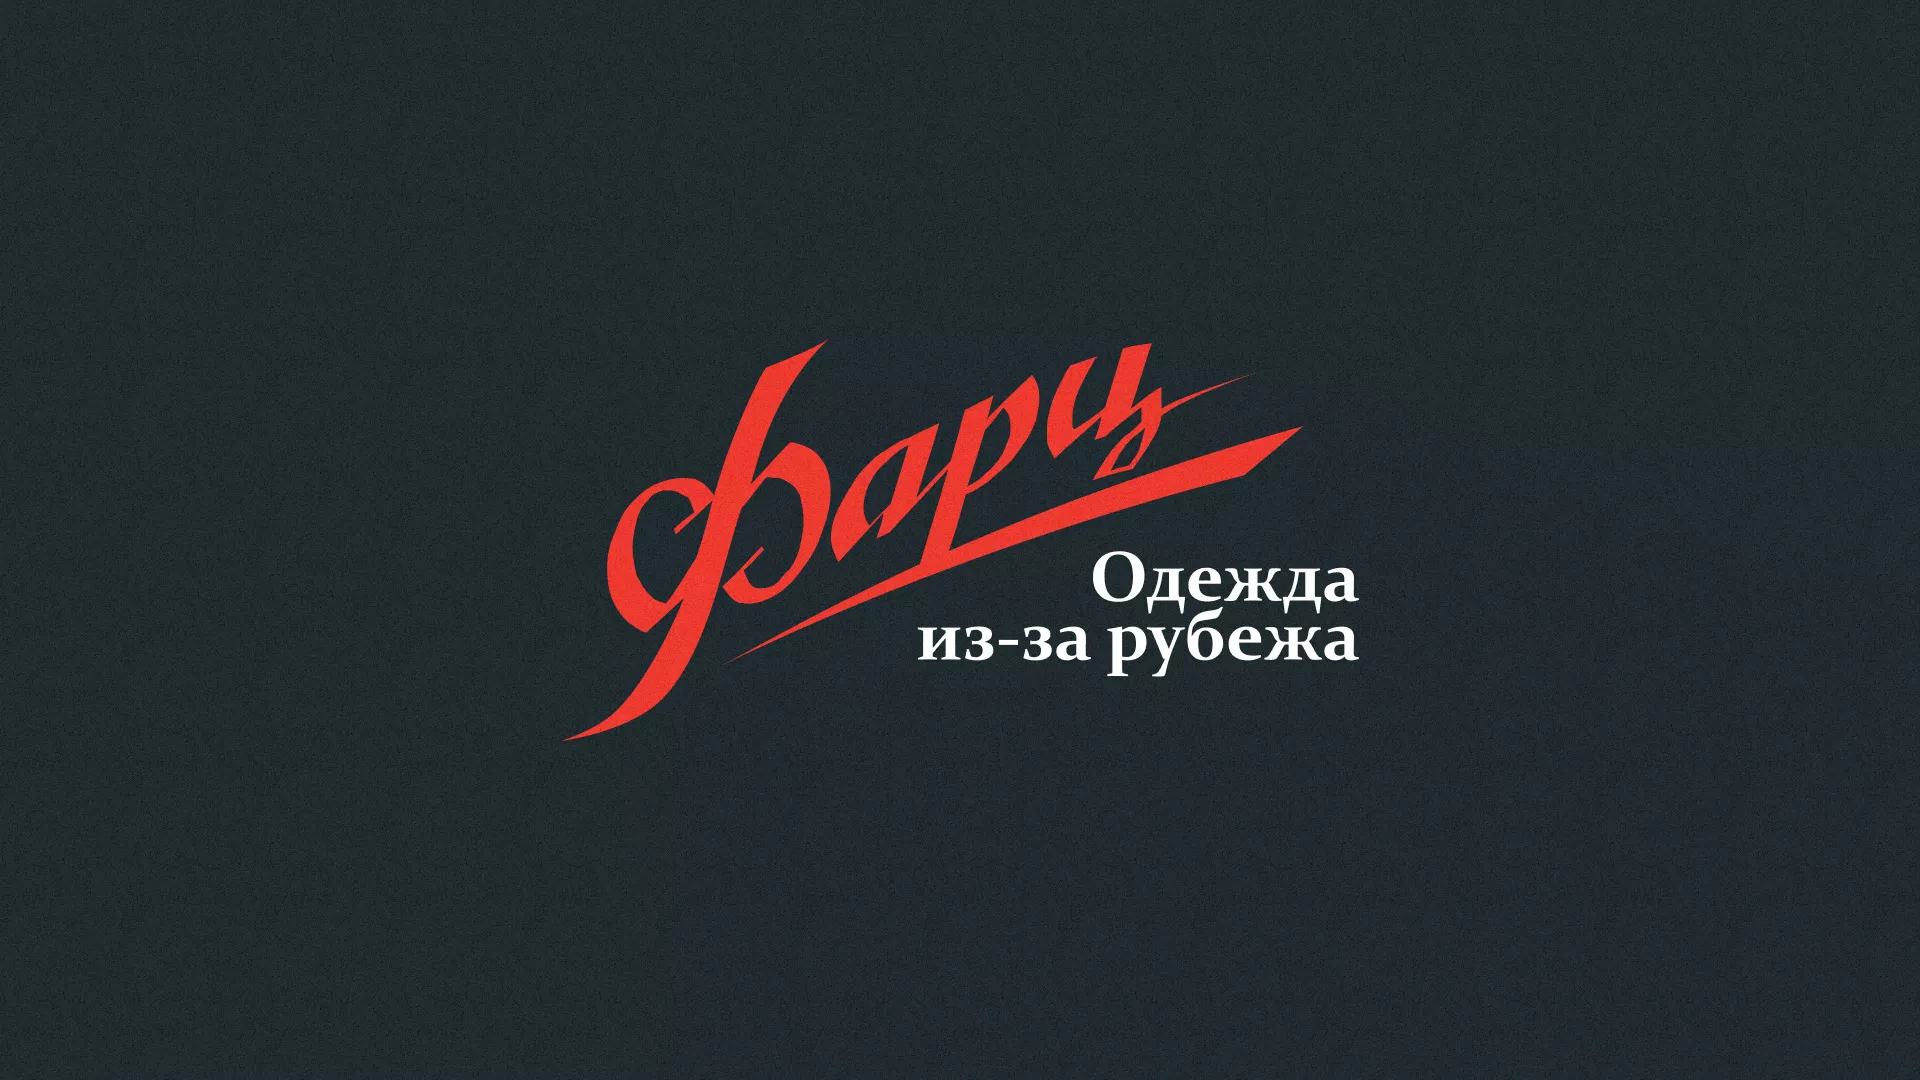 Разработка логотипа магазина «Фарц» в Великом Устюге